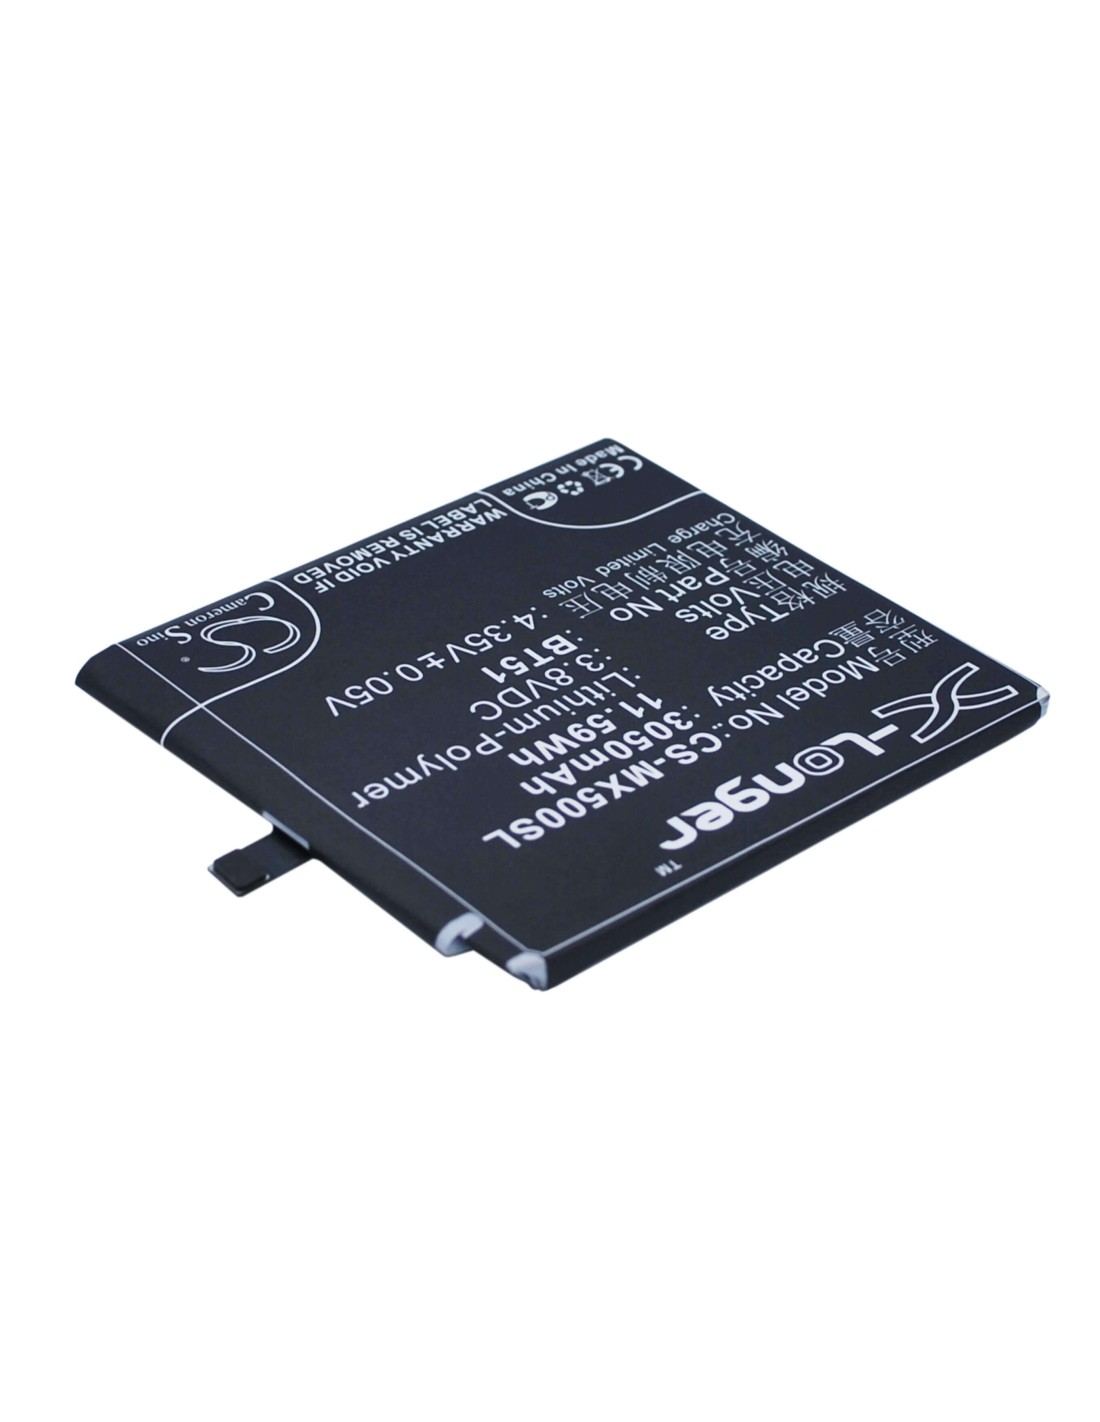 Battery for Meizu MX5, MX5 Dual SIM, M575 Dual SIM 3.8V, 3050mAh - 11.59Wh